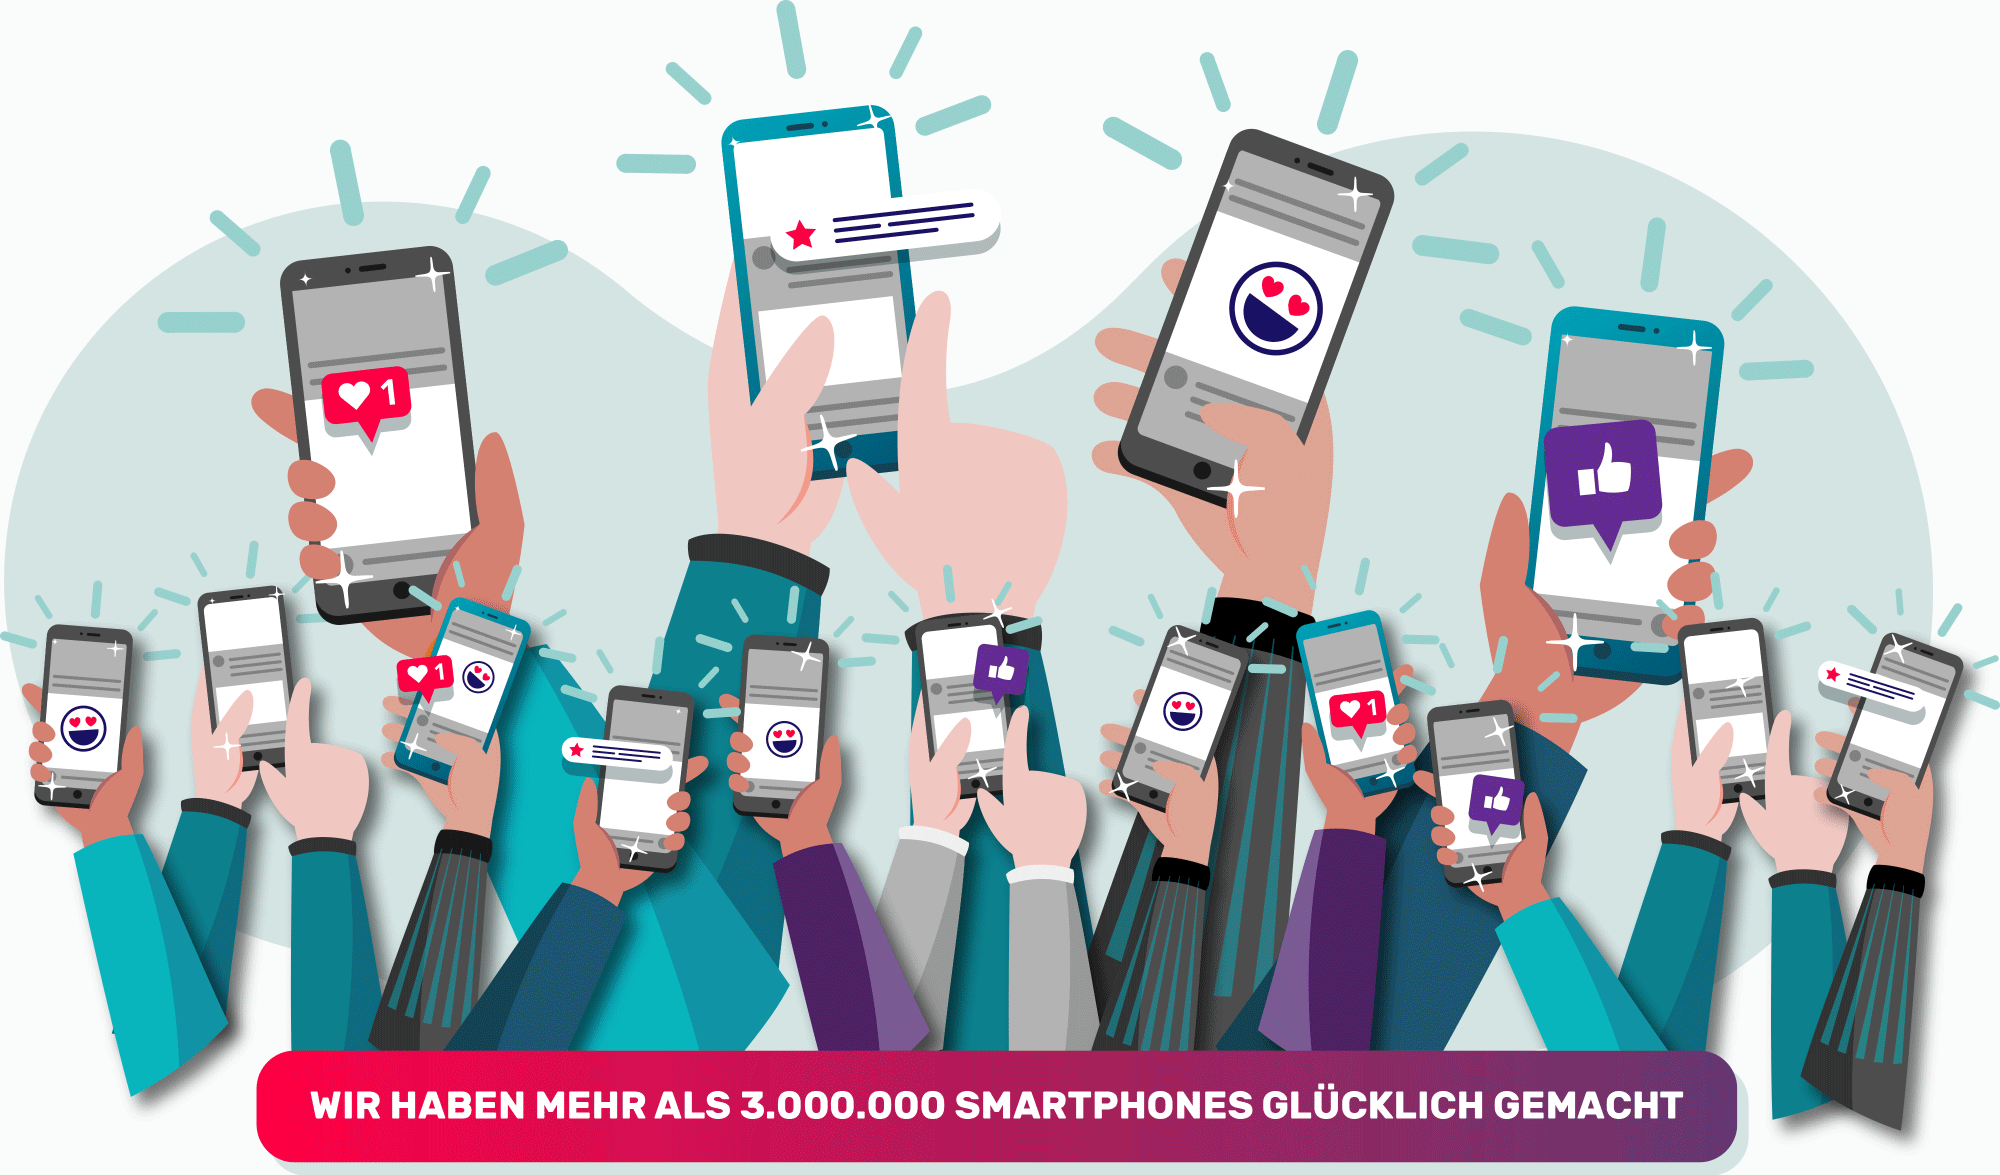 3.000.000 Smartphones glücklich gemacht